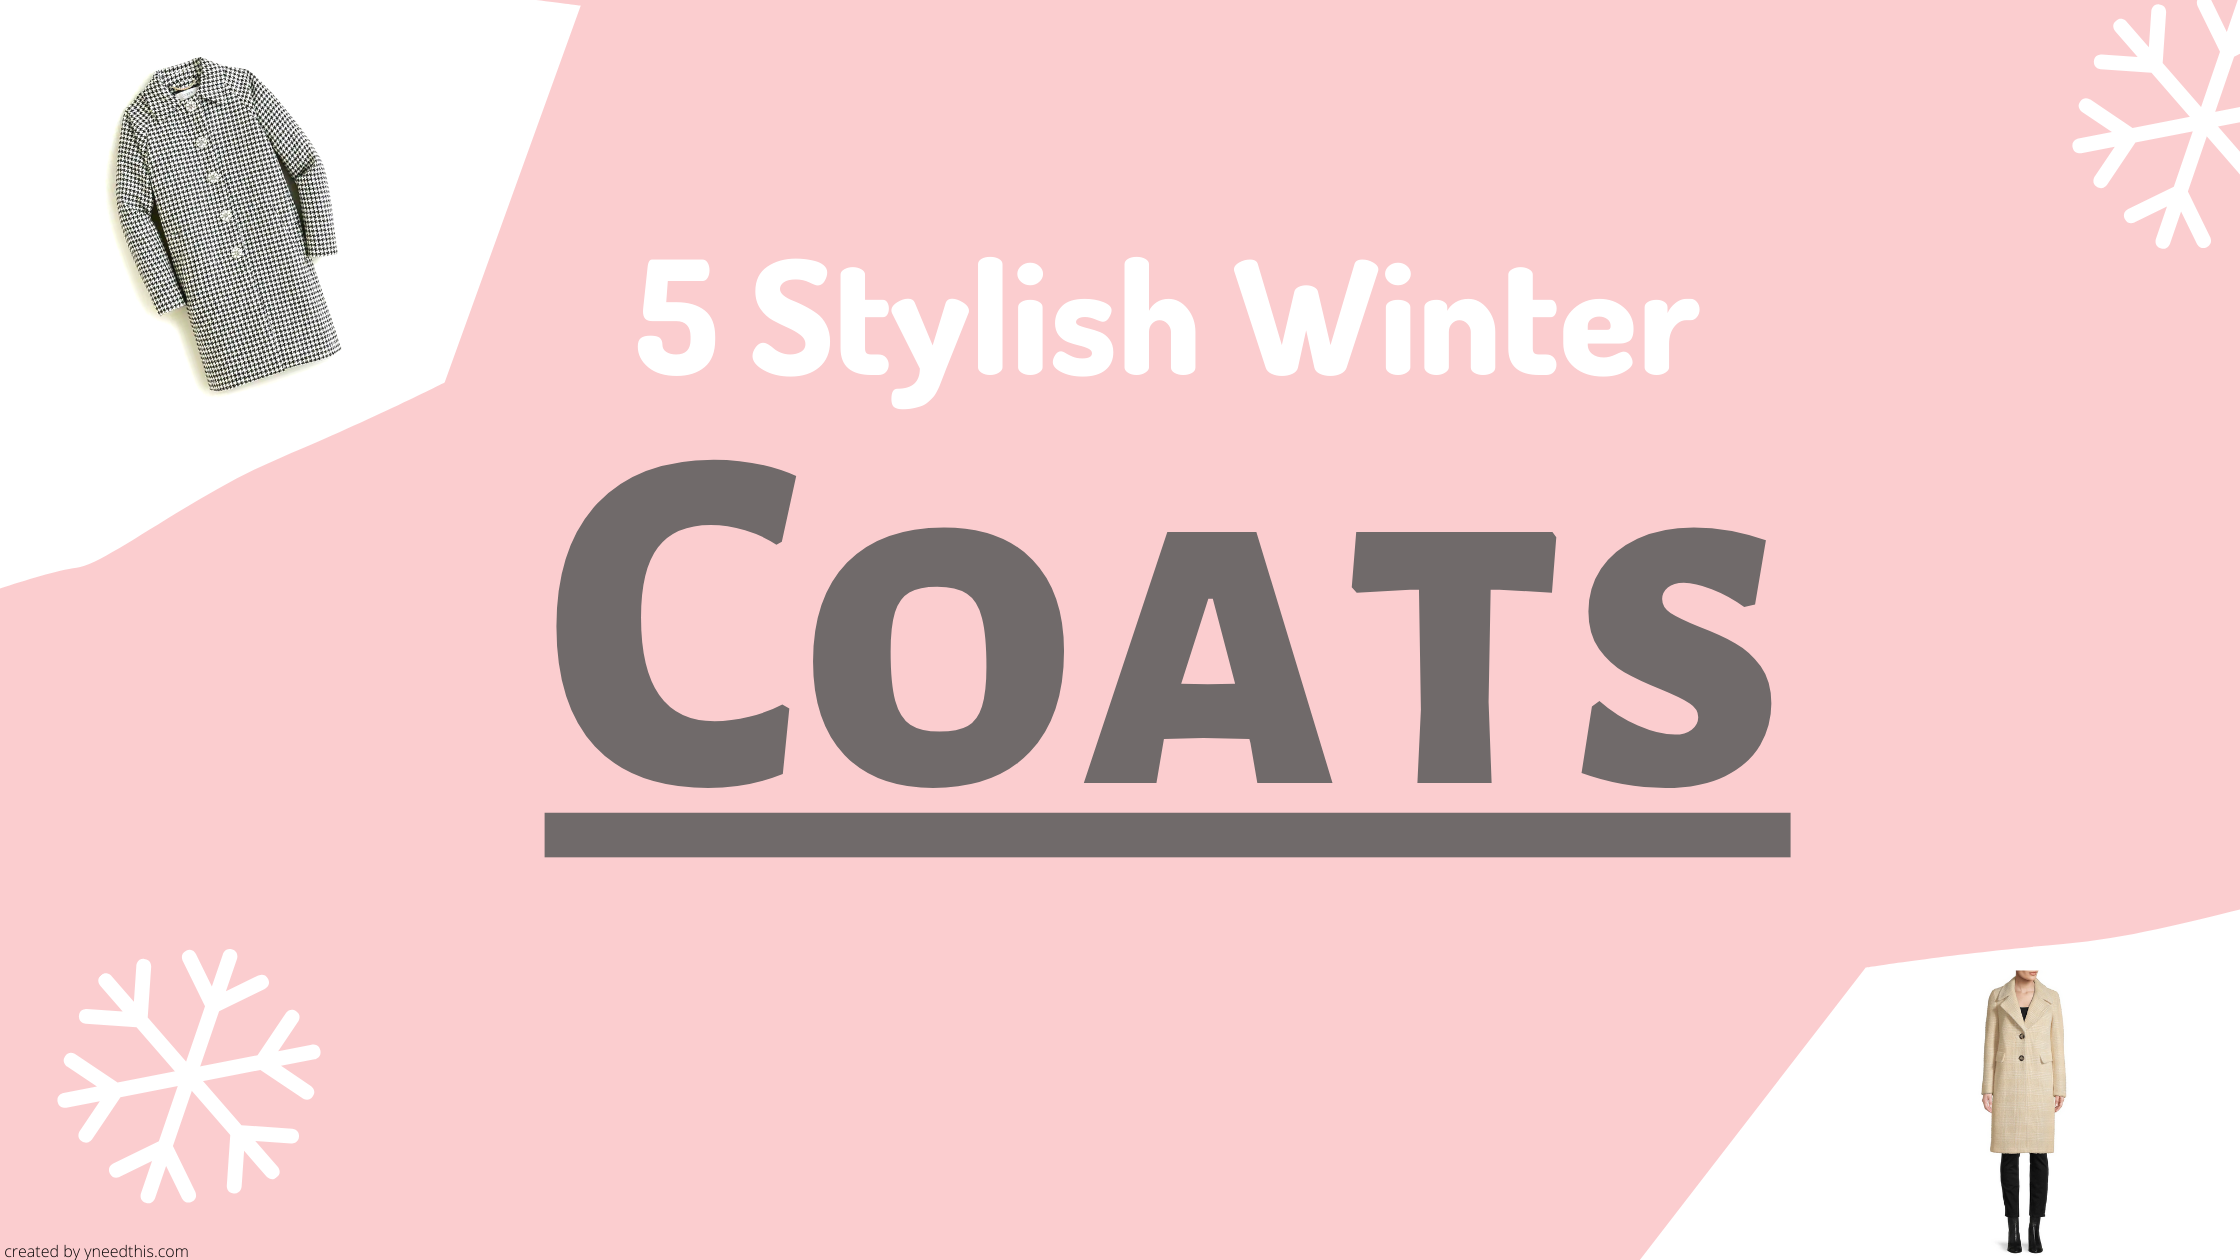 Five Stylish Coats